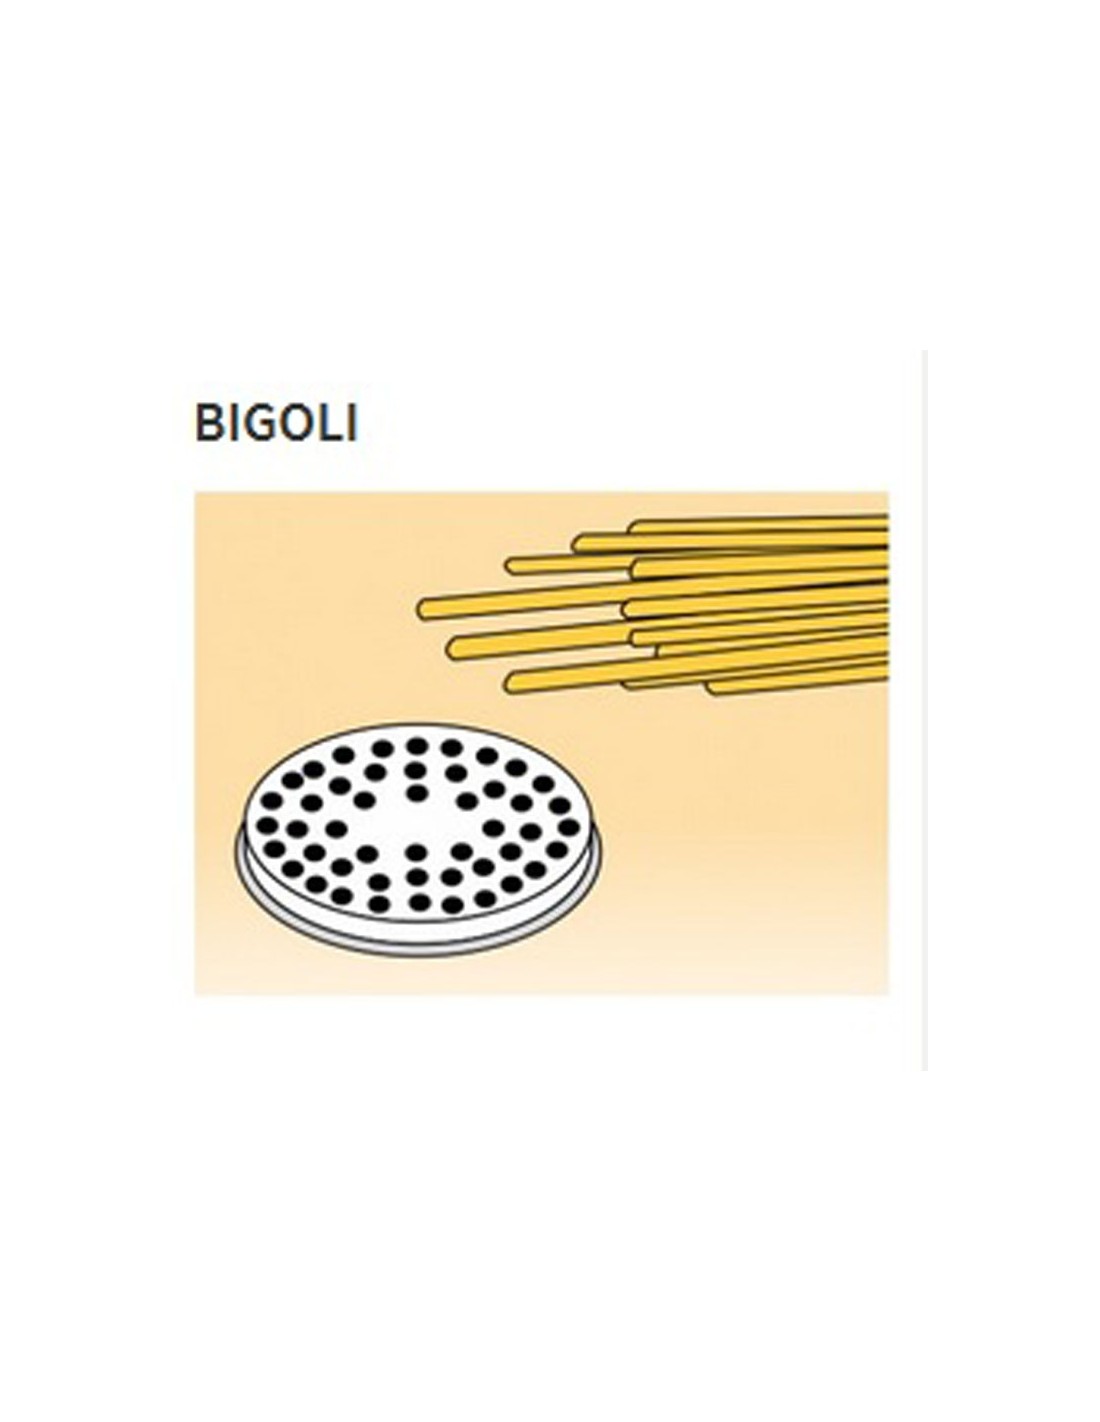 Trafile formati vari in lega ottone - Bronzo - Per macchina pasta fresca modello MPF15 - Bigoli Ø mm 3